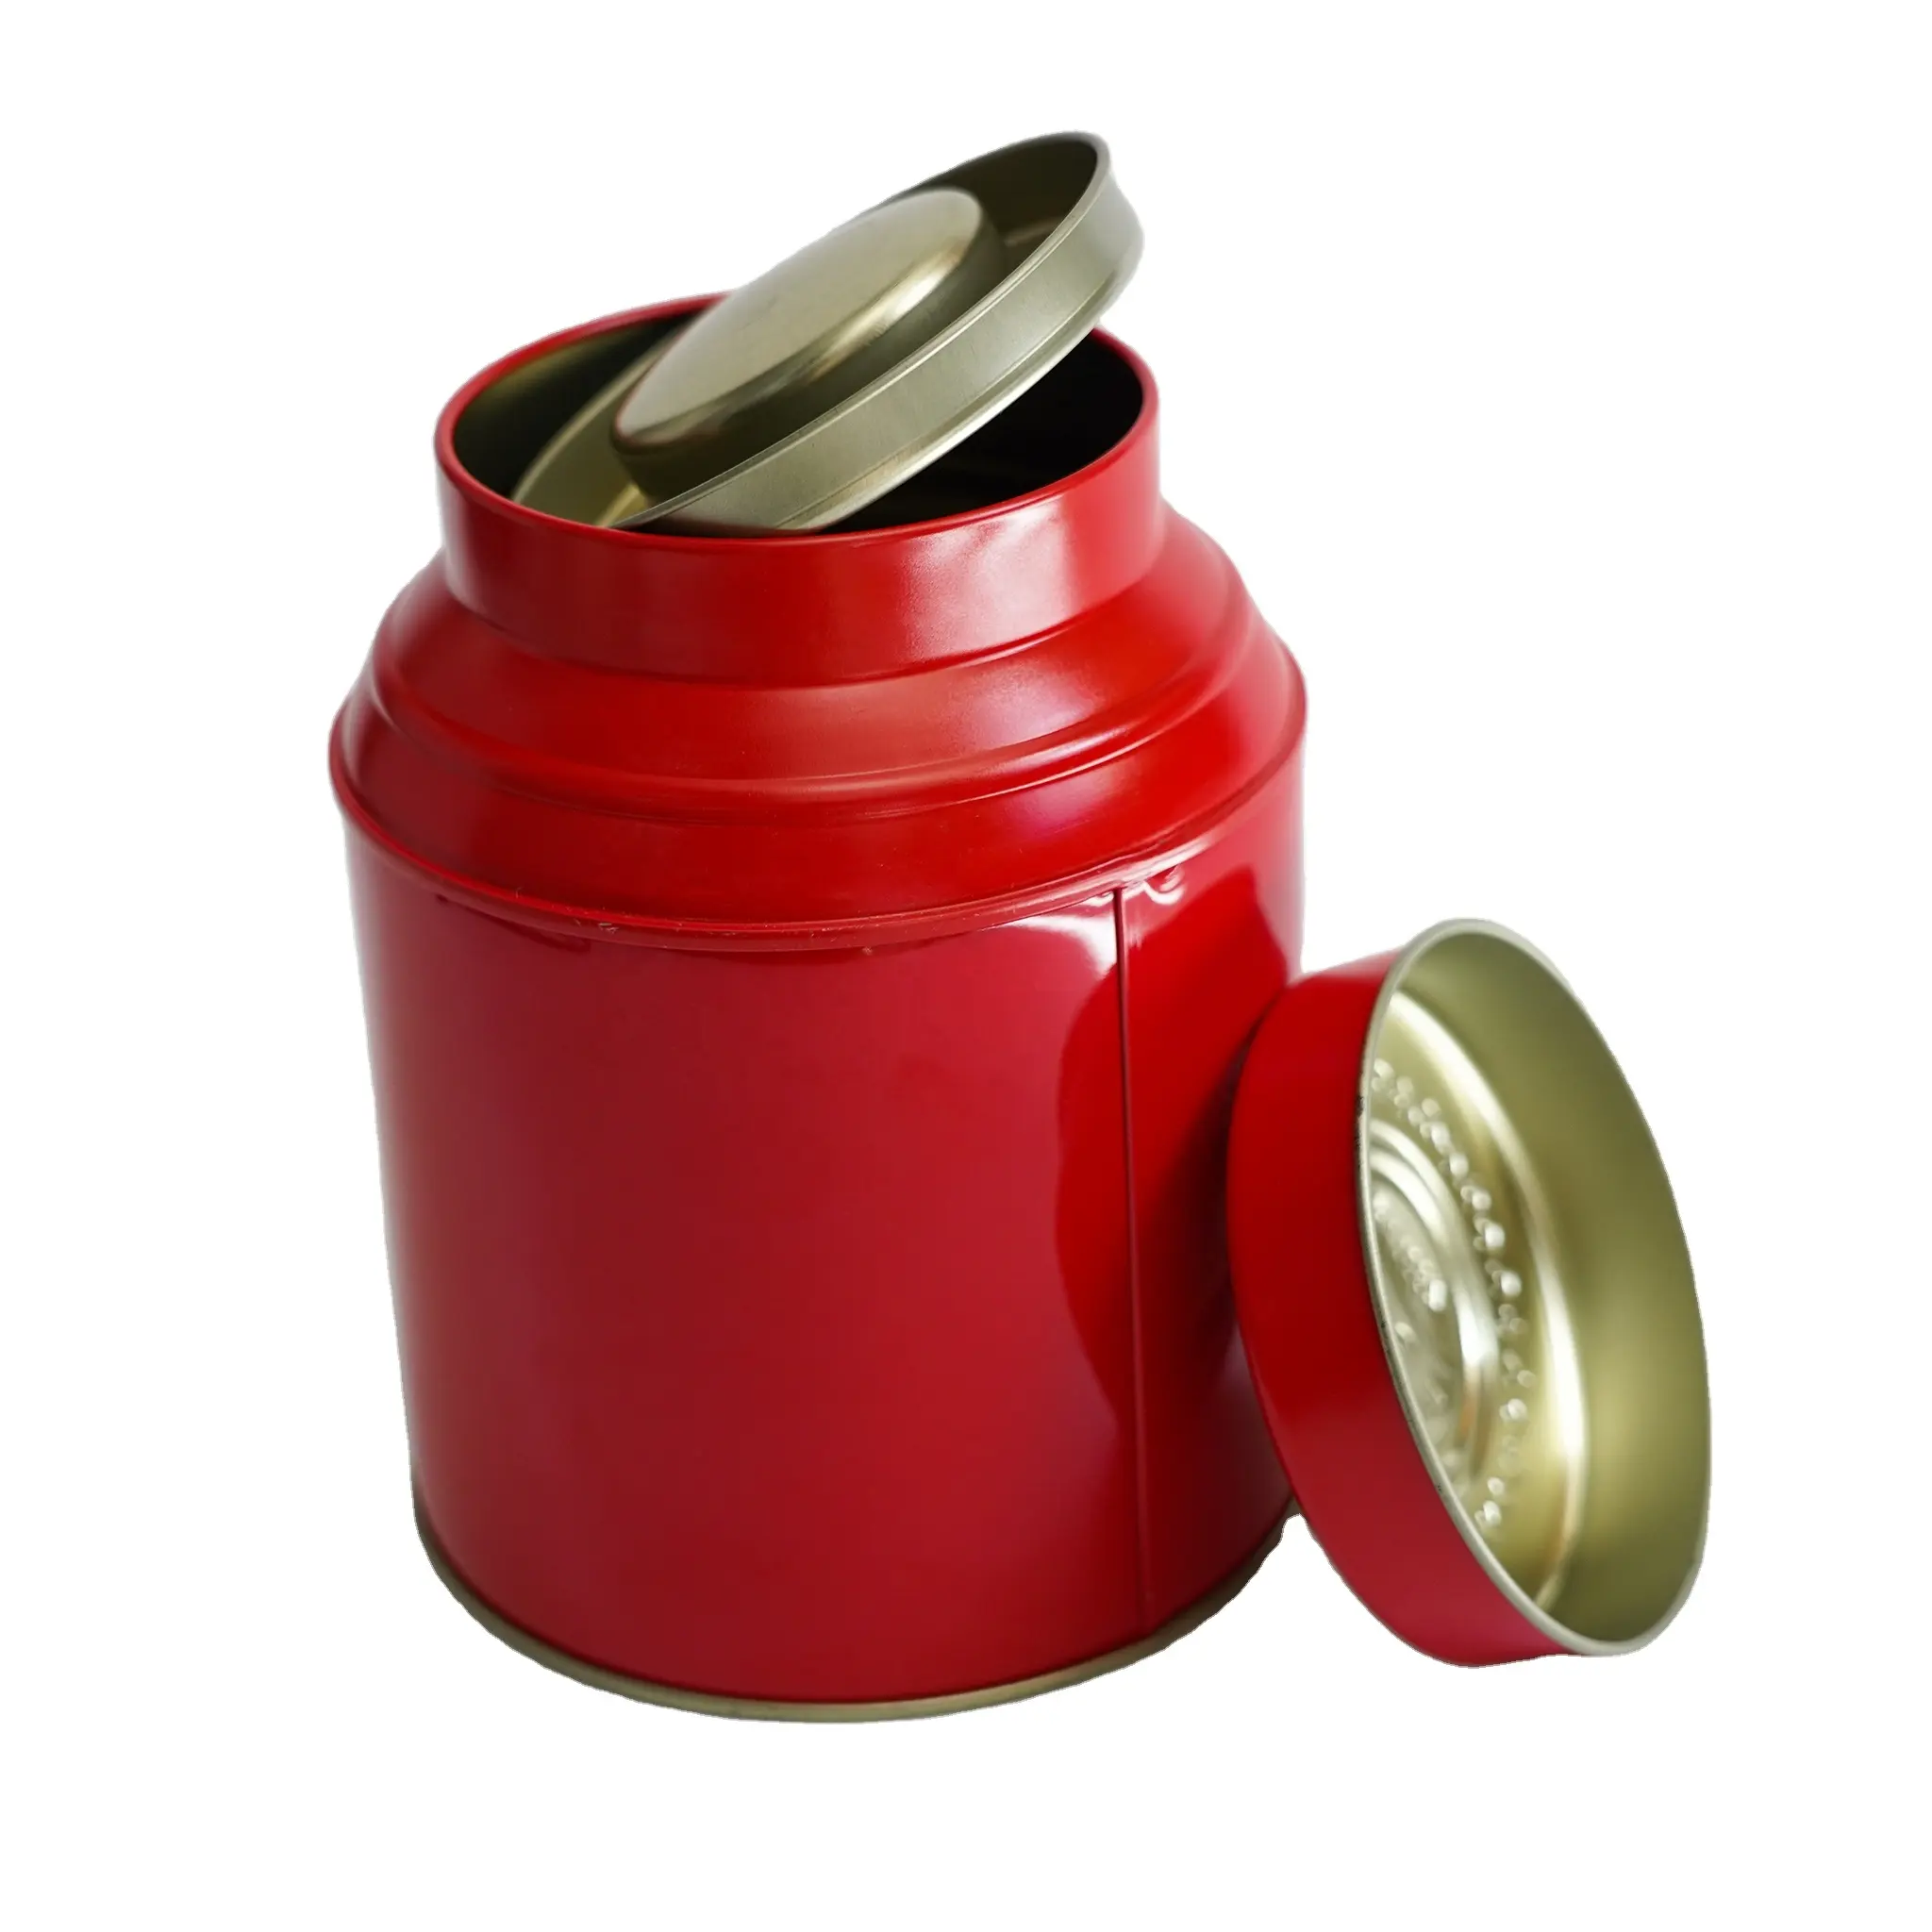 Boîte de conserve en aluminium rouge avec couvercle, peut être utilisée pour stocker le thé, les grains de café, récipient alimentaire scellé, vente en gros